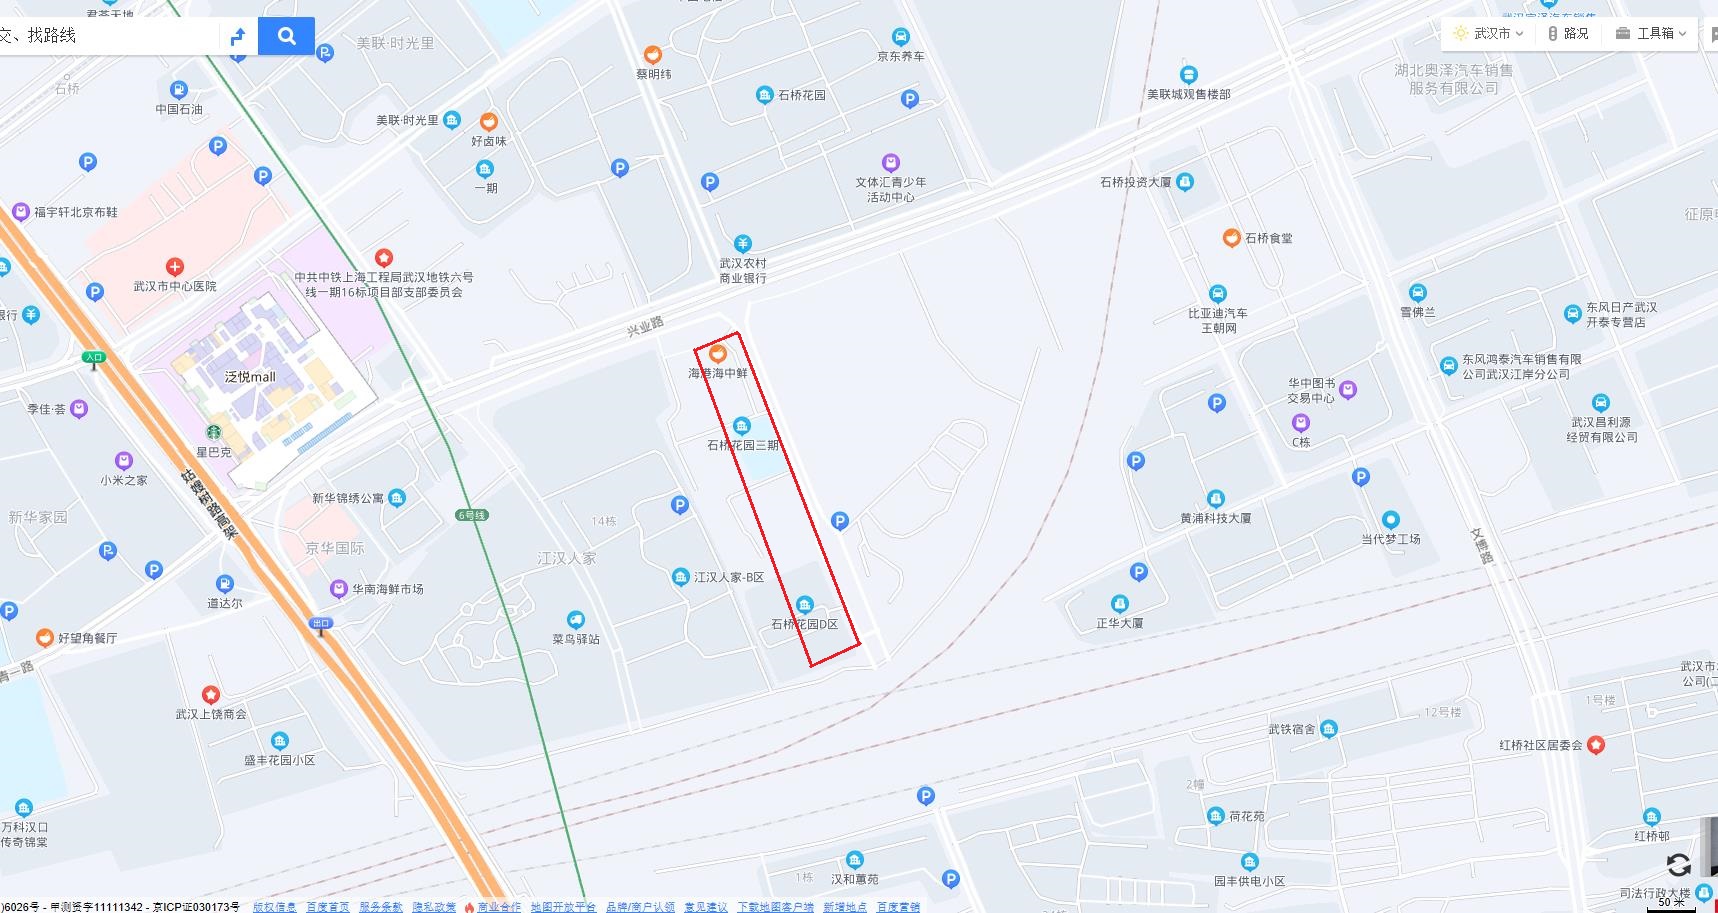 11月16日汉口青松路计划施工停水公告